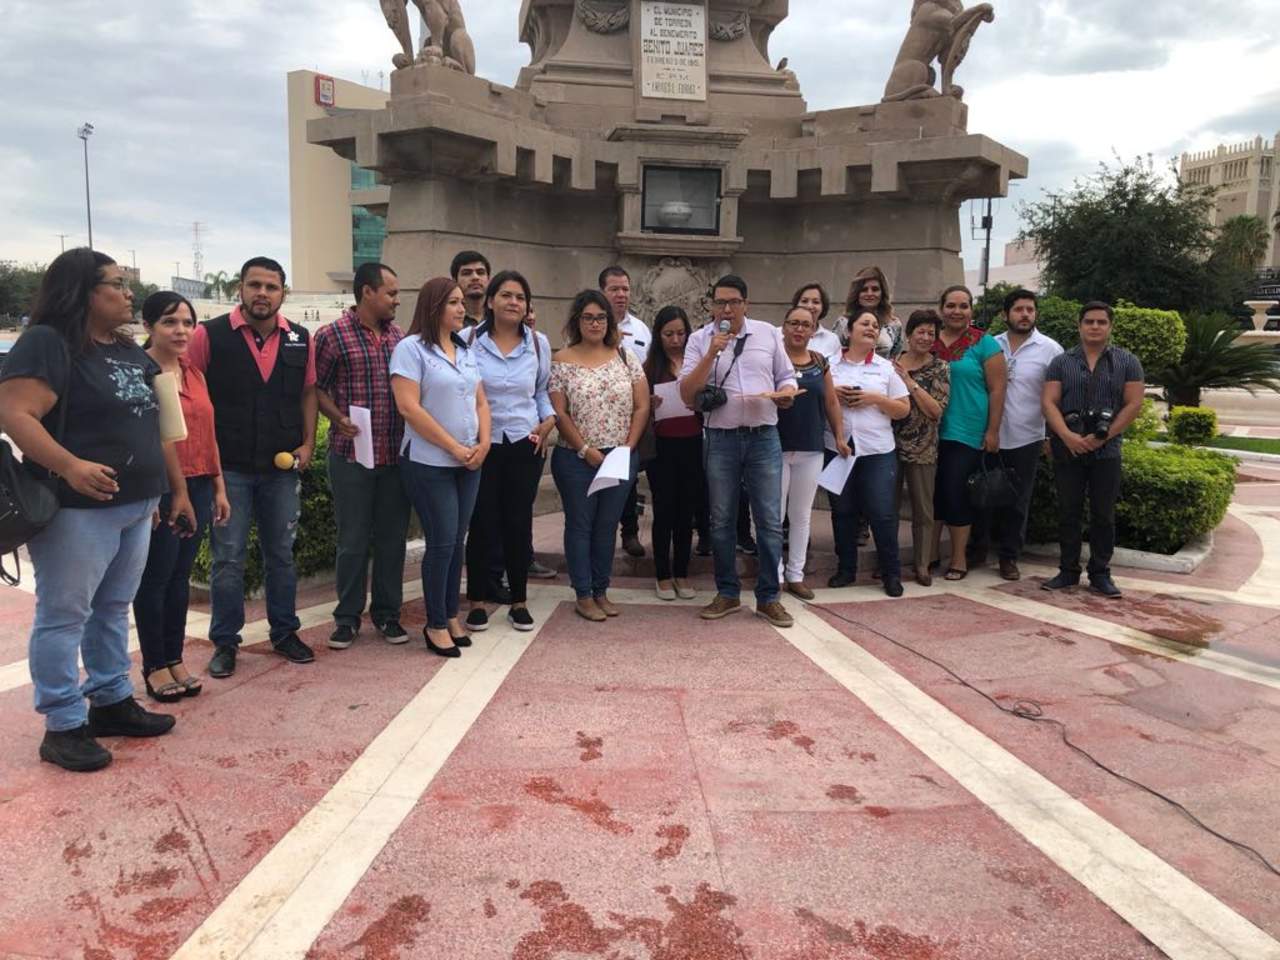 Reporteros y reporteras, fotógrafos y camarógrafos, elaboraron y firmaron un pronunciamiento que será entregado a la Comisión de Derechos Humanos del Estado de Coahuila, autoridades y asociaciones civiles. (EL SIGLO DE TORREÓN)